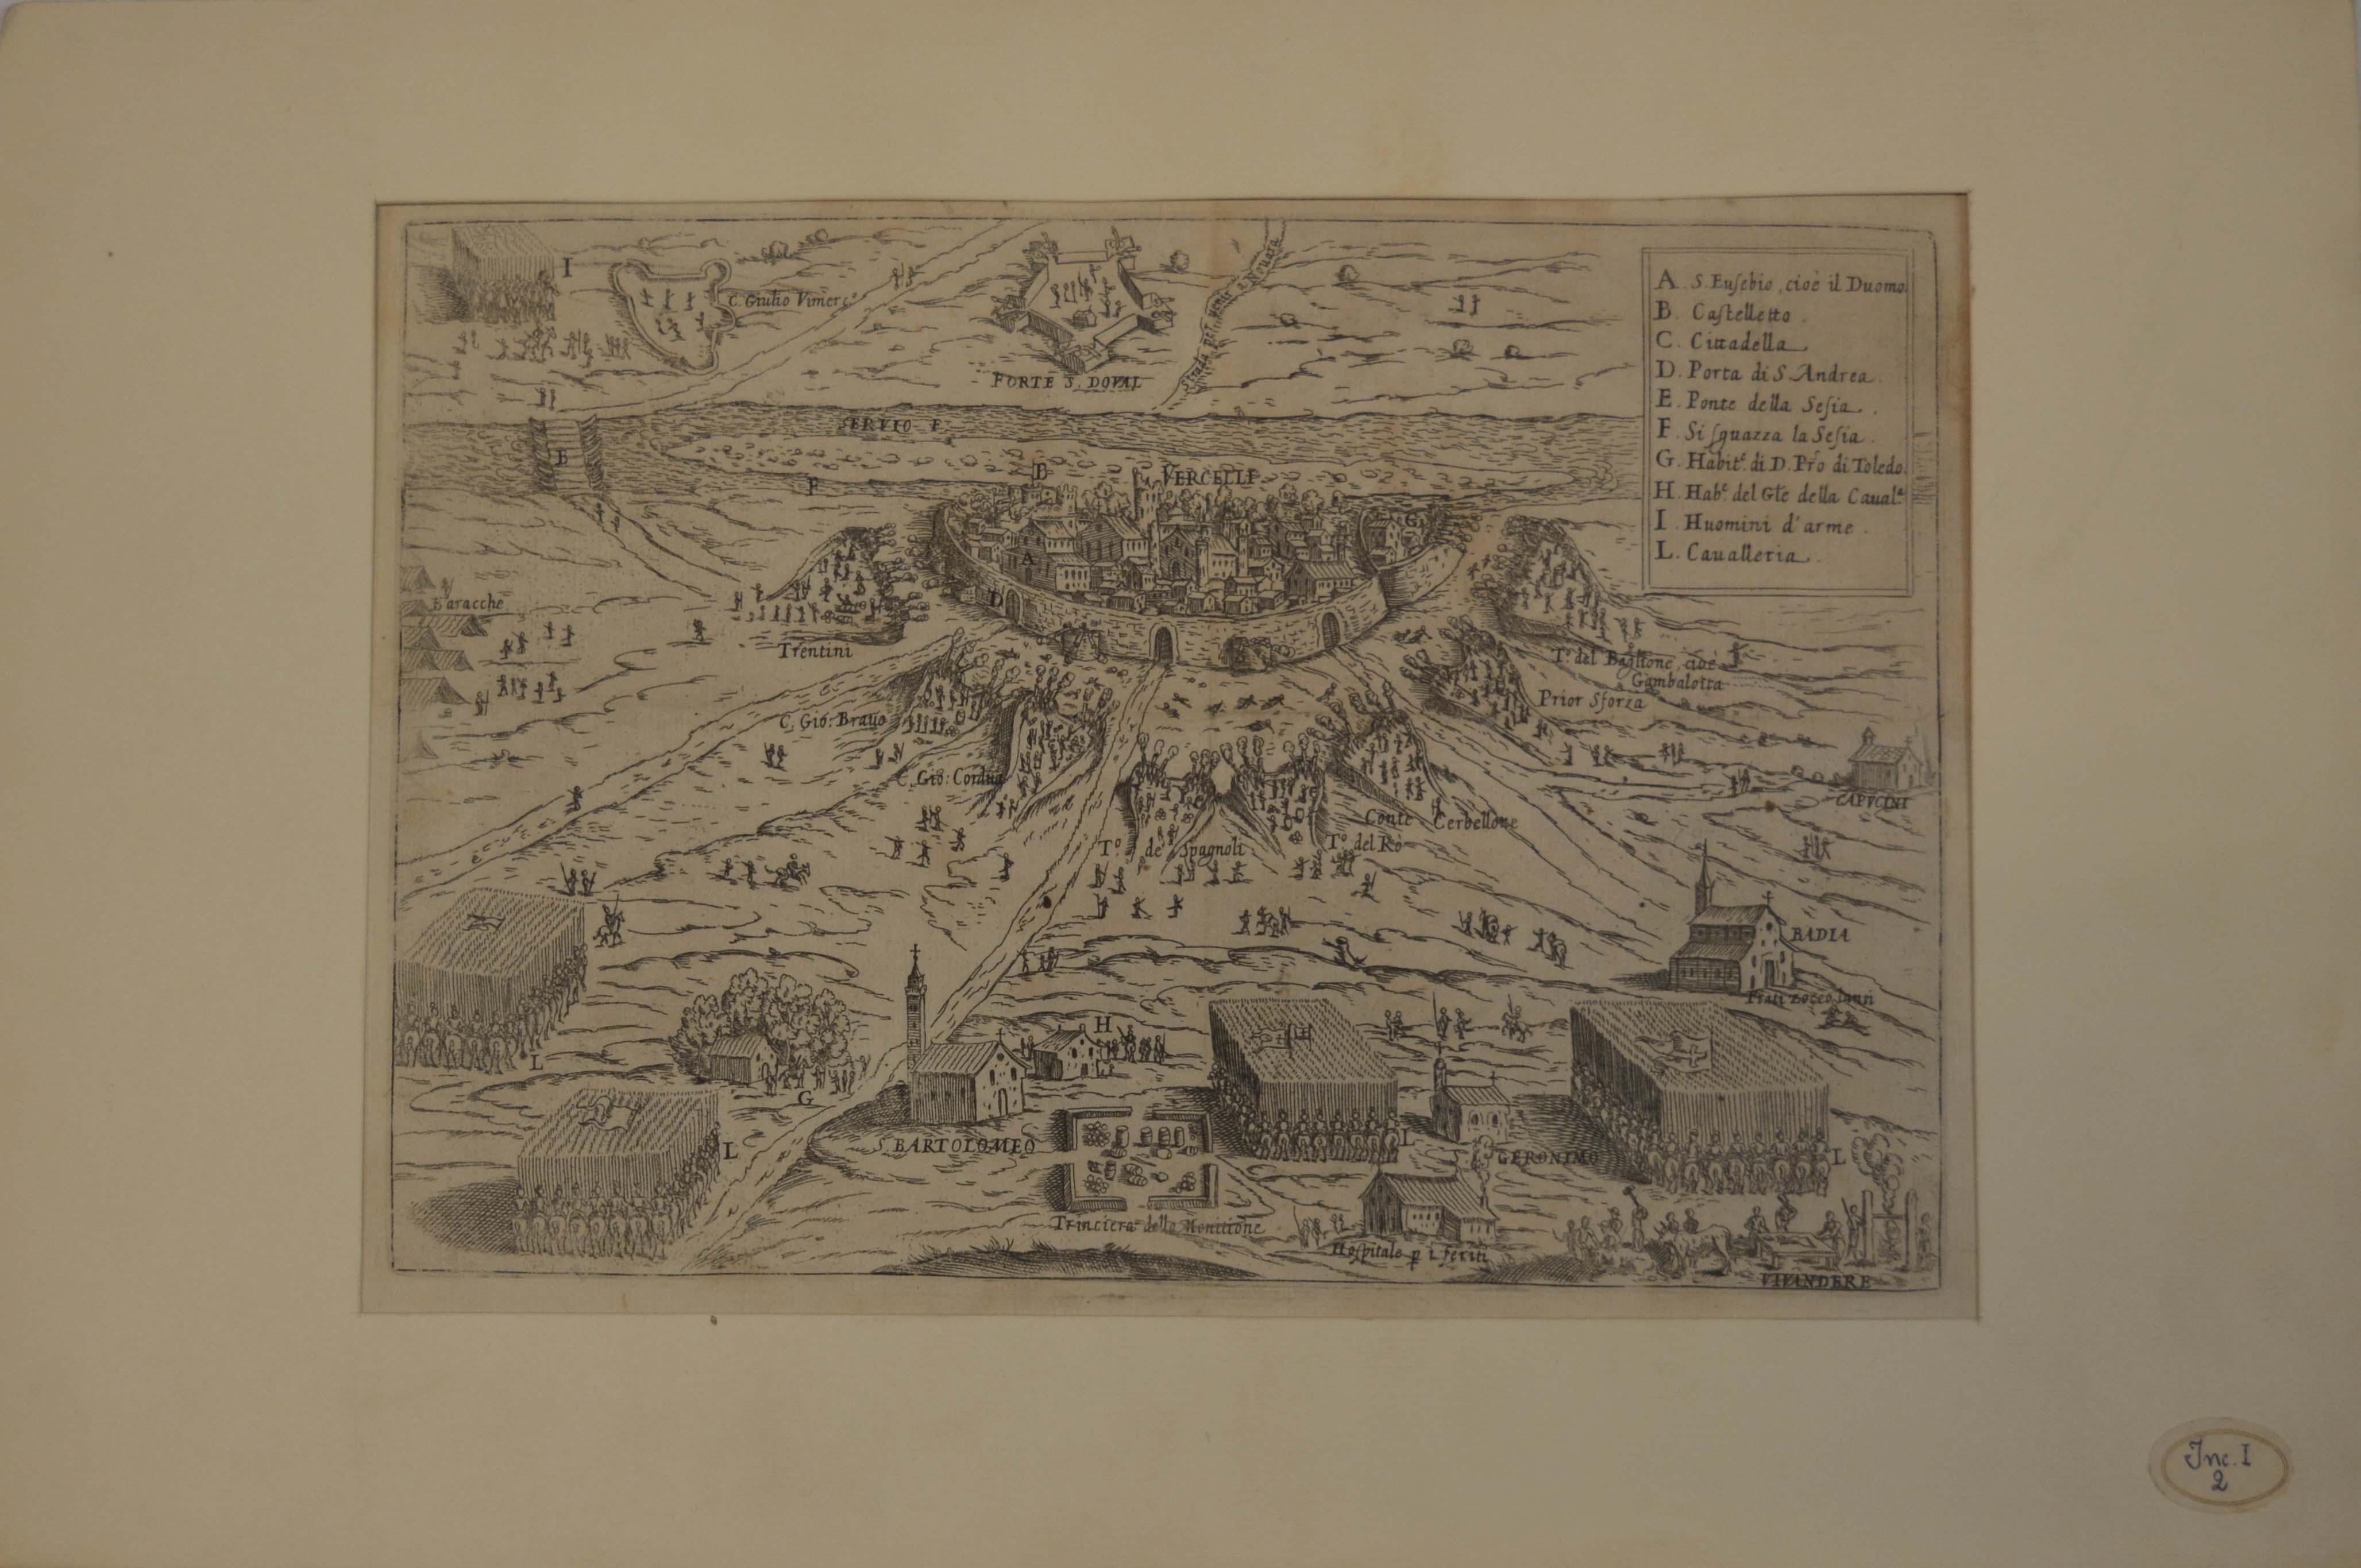 Plan du Siege de Verceil par les Espagnoles de l'an 1617, veduta prospettica della città di Vercelli durante l'assedio degli spagnoli del 1617 (stampa) - ambito piemontese (primo quarto sec. XVII)